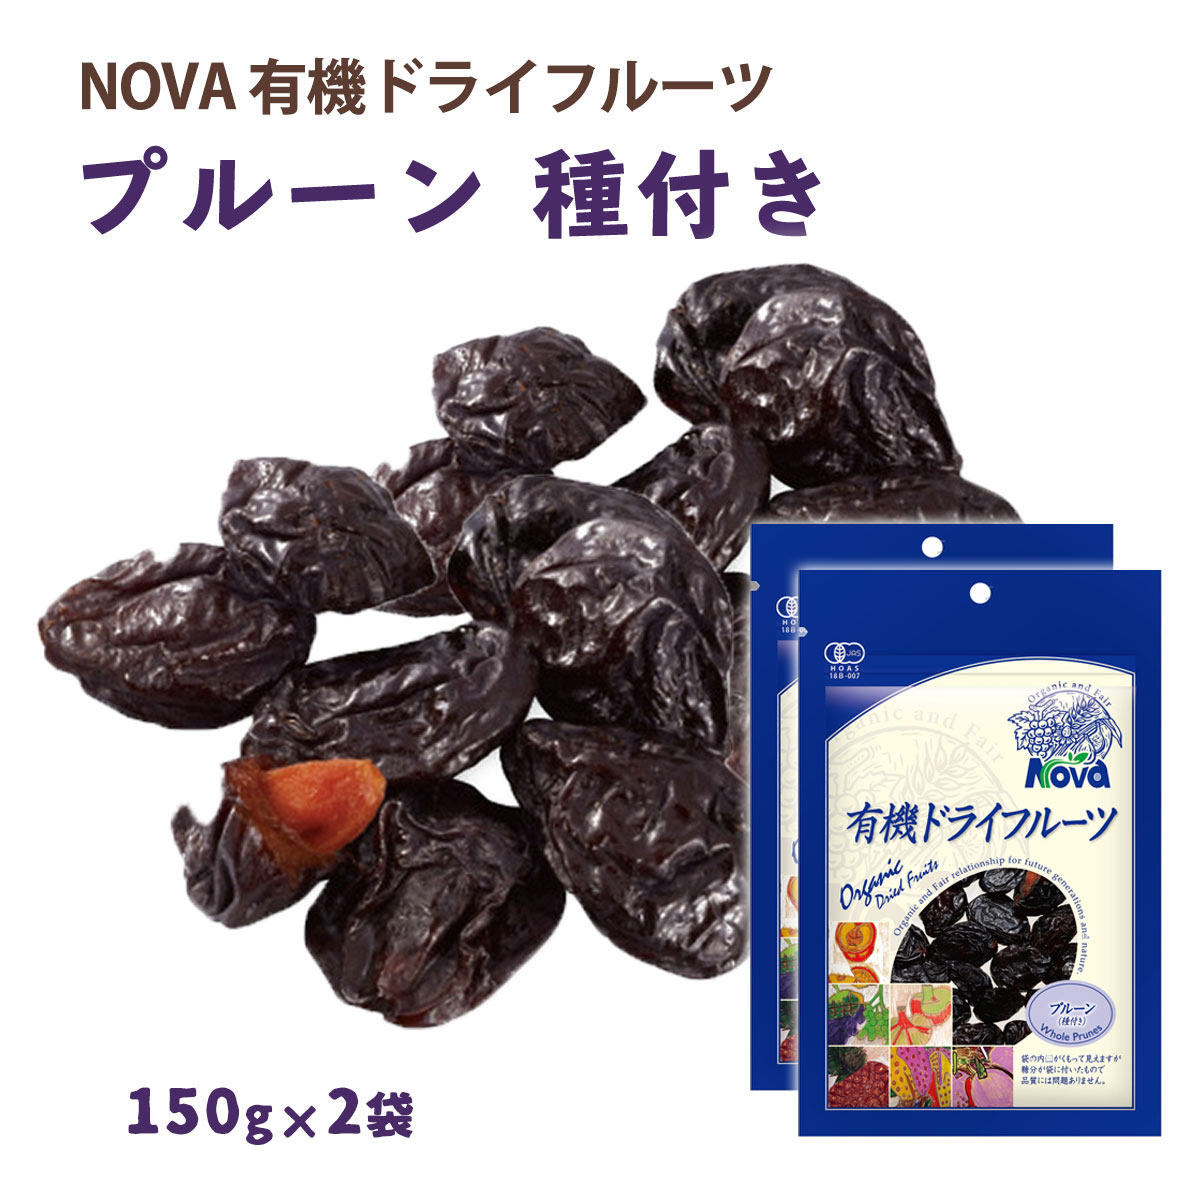 【スーパーセール価格】送料無料 [NOVA] 有機ドライフルーツ プルーン 種あり 150g 2袋セット /ノヴァ ドライフルーツ 有機 オーガニック 自然